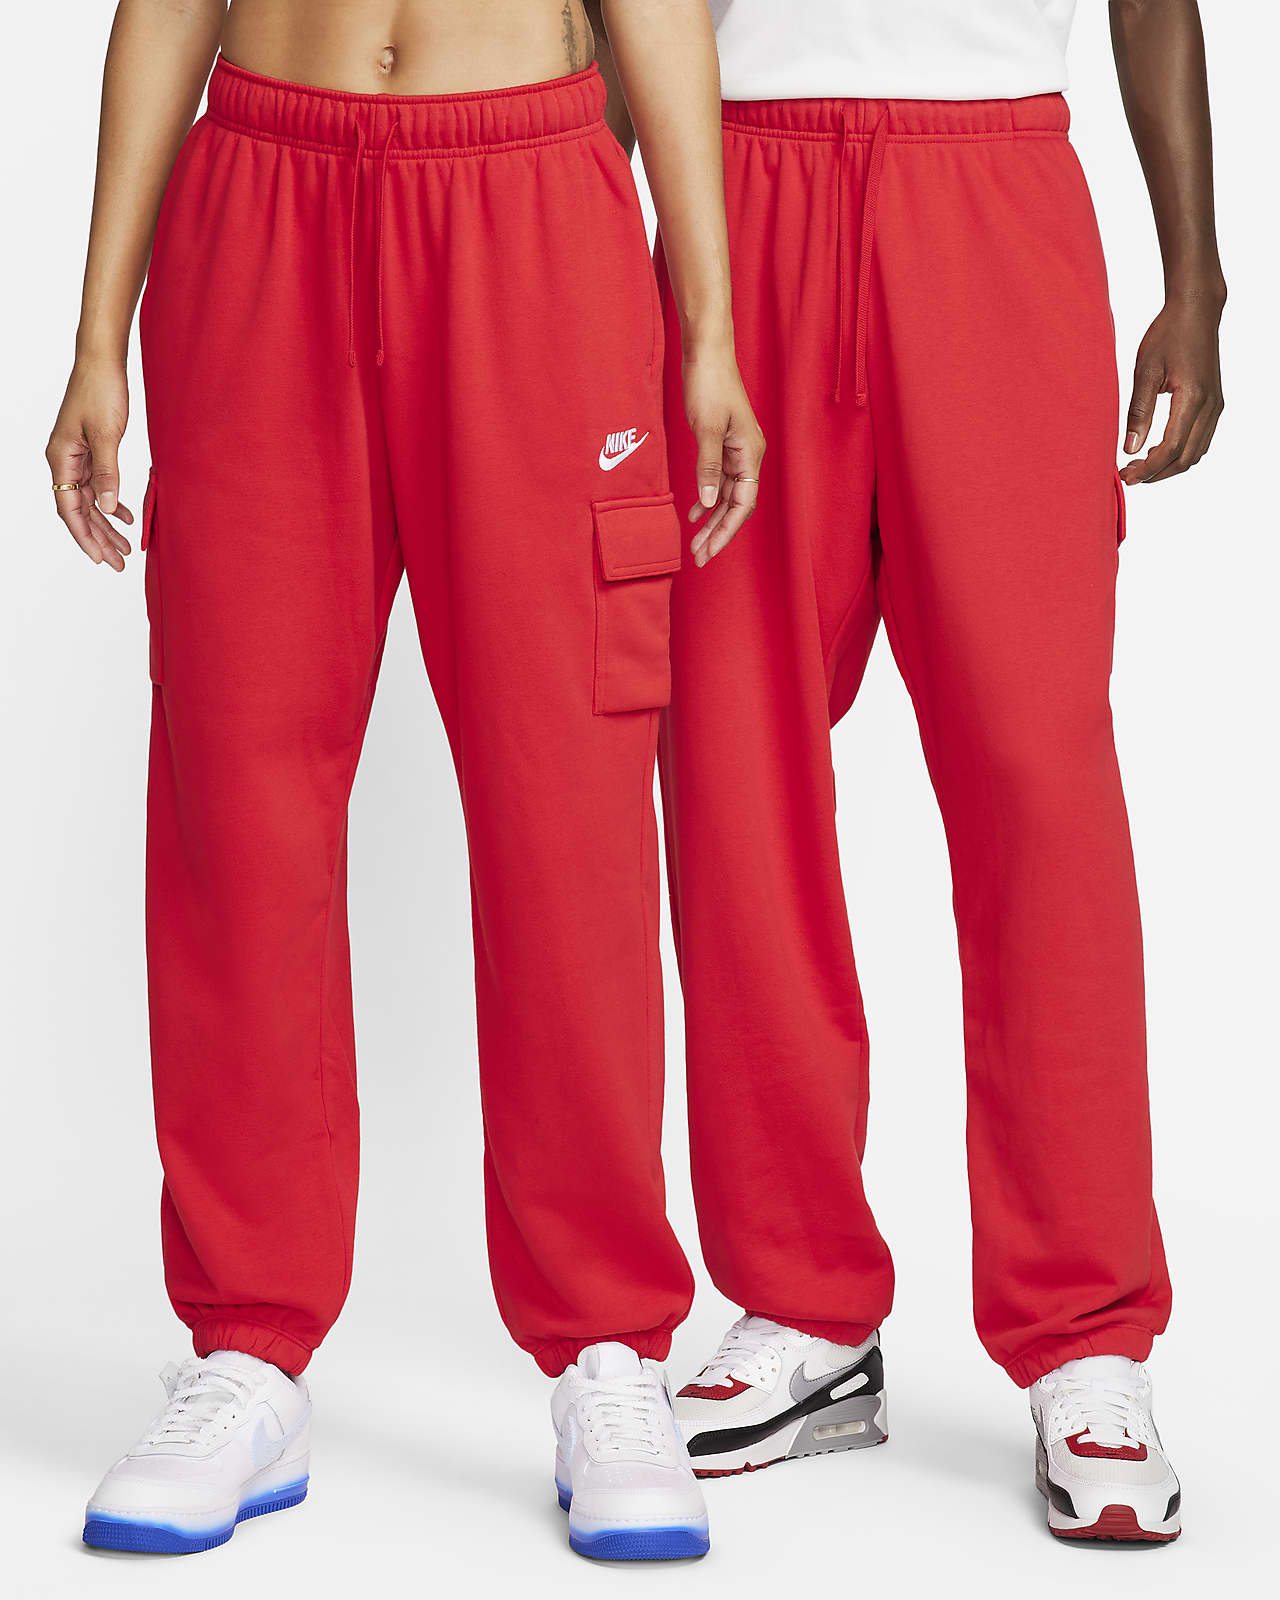 steek Betuttelen Beraadslagen Nike Sportswear Club Fleece Women's Mid-Rise Oversized Cargo Sweatpants.  Nike.com